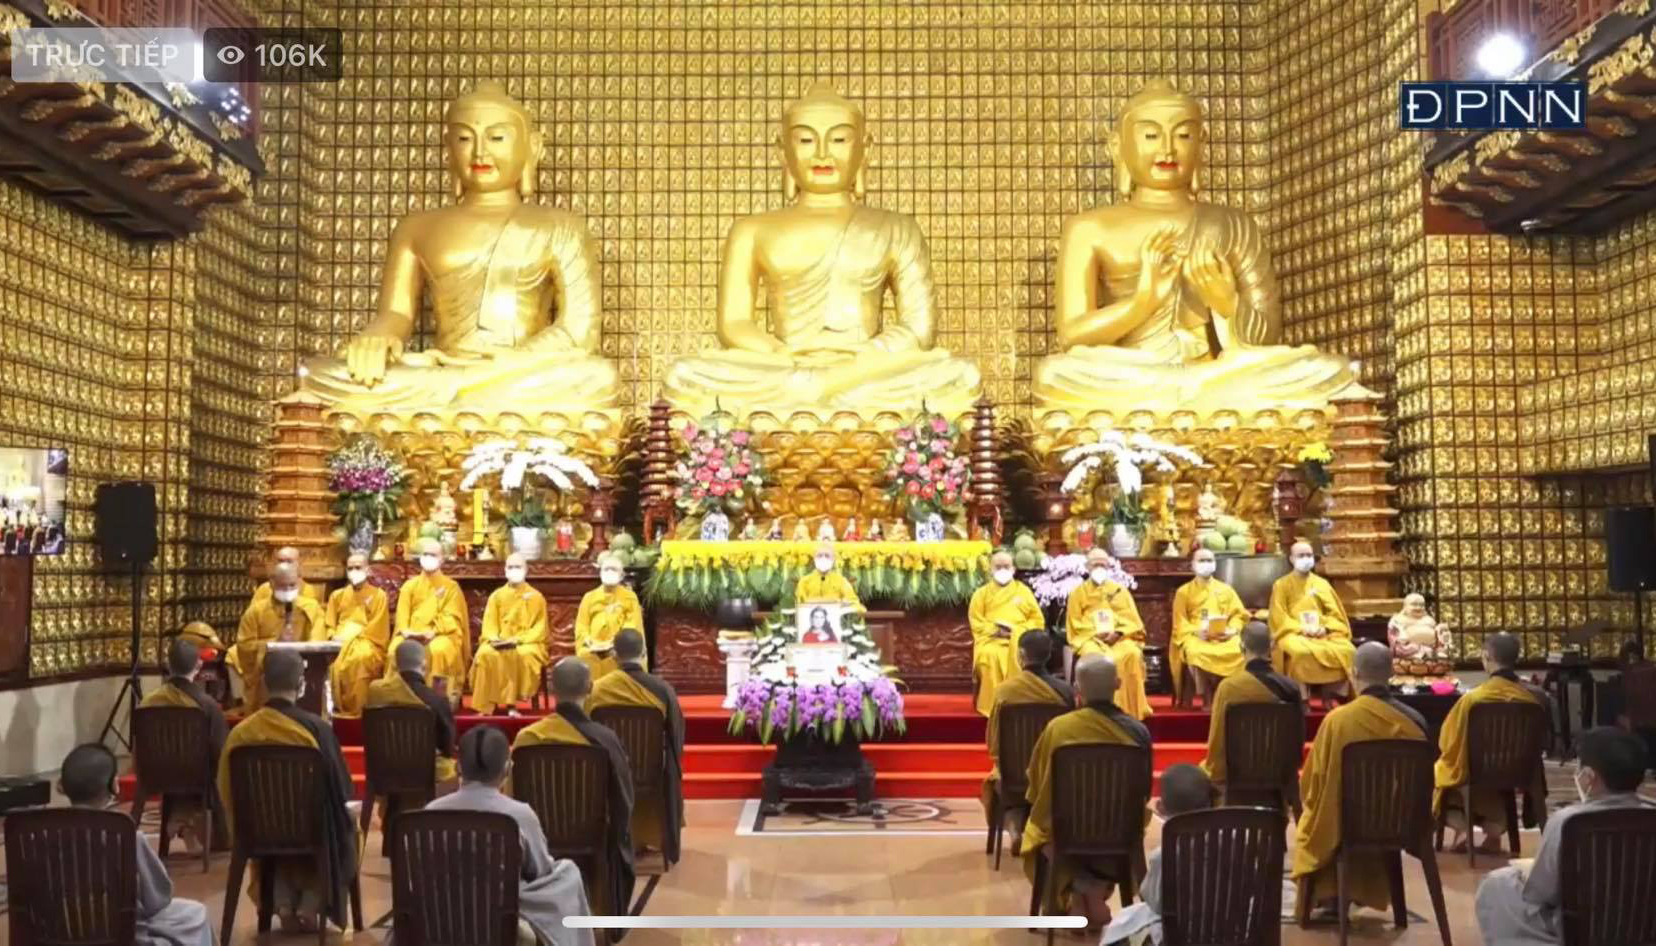 Toàn cảnh buổi lễ cầu siêu tại chùa Giác Ngộ cho cố ca sĩ Phi Nhung